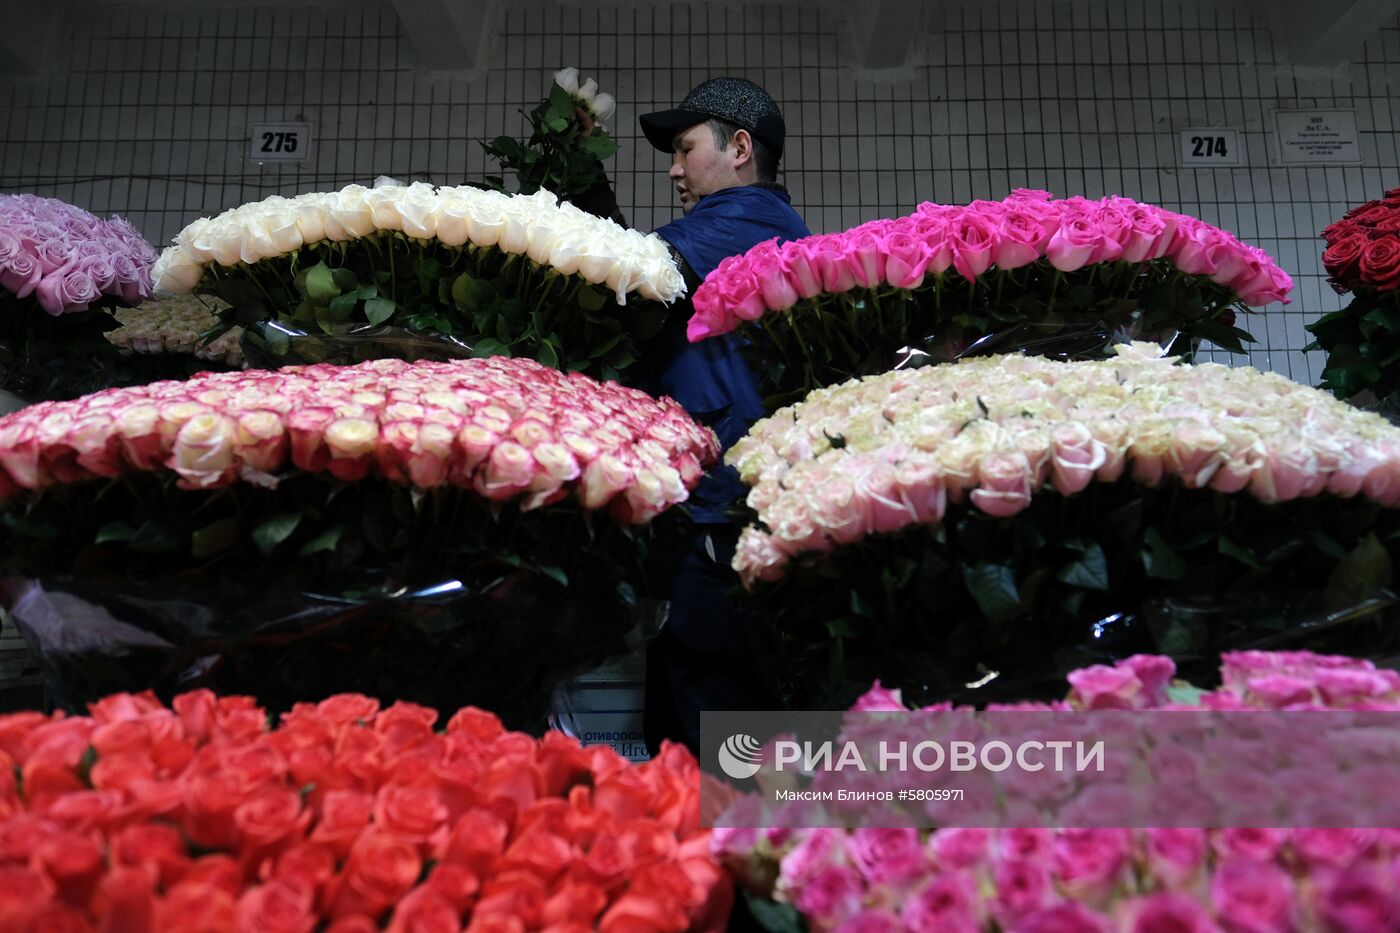 Продажа цветов к 8 Марта